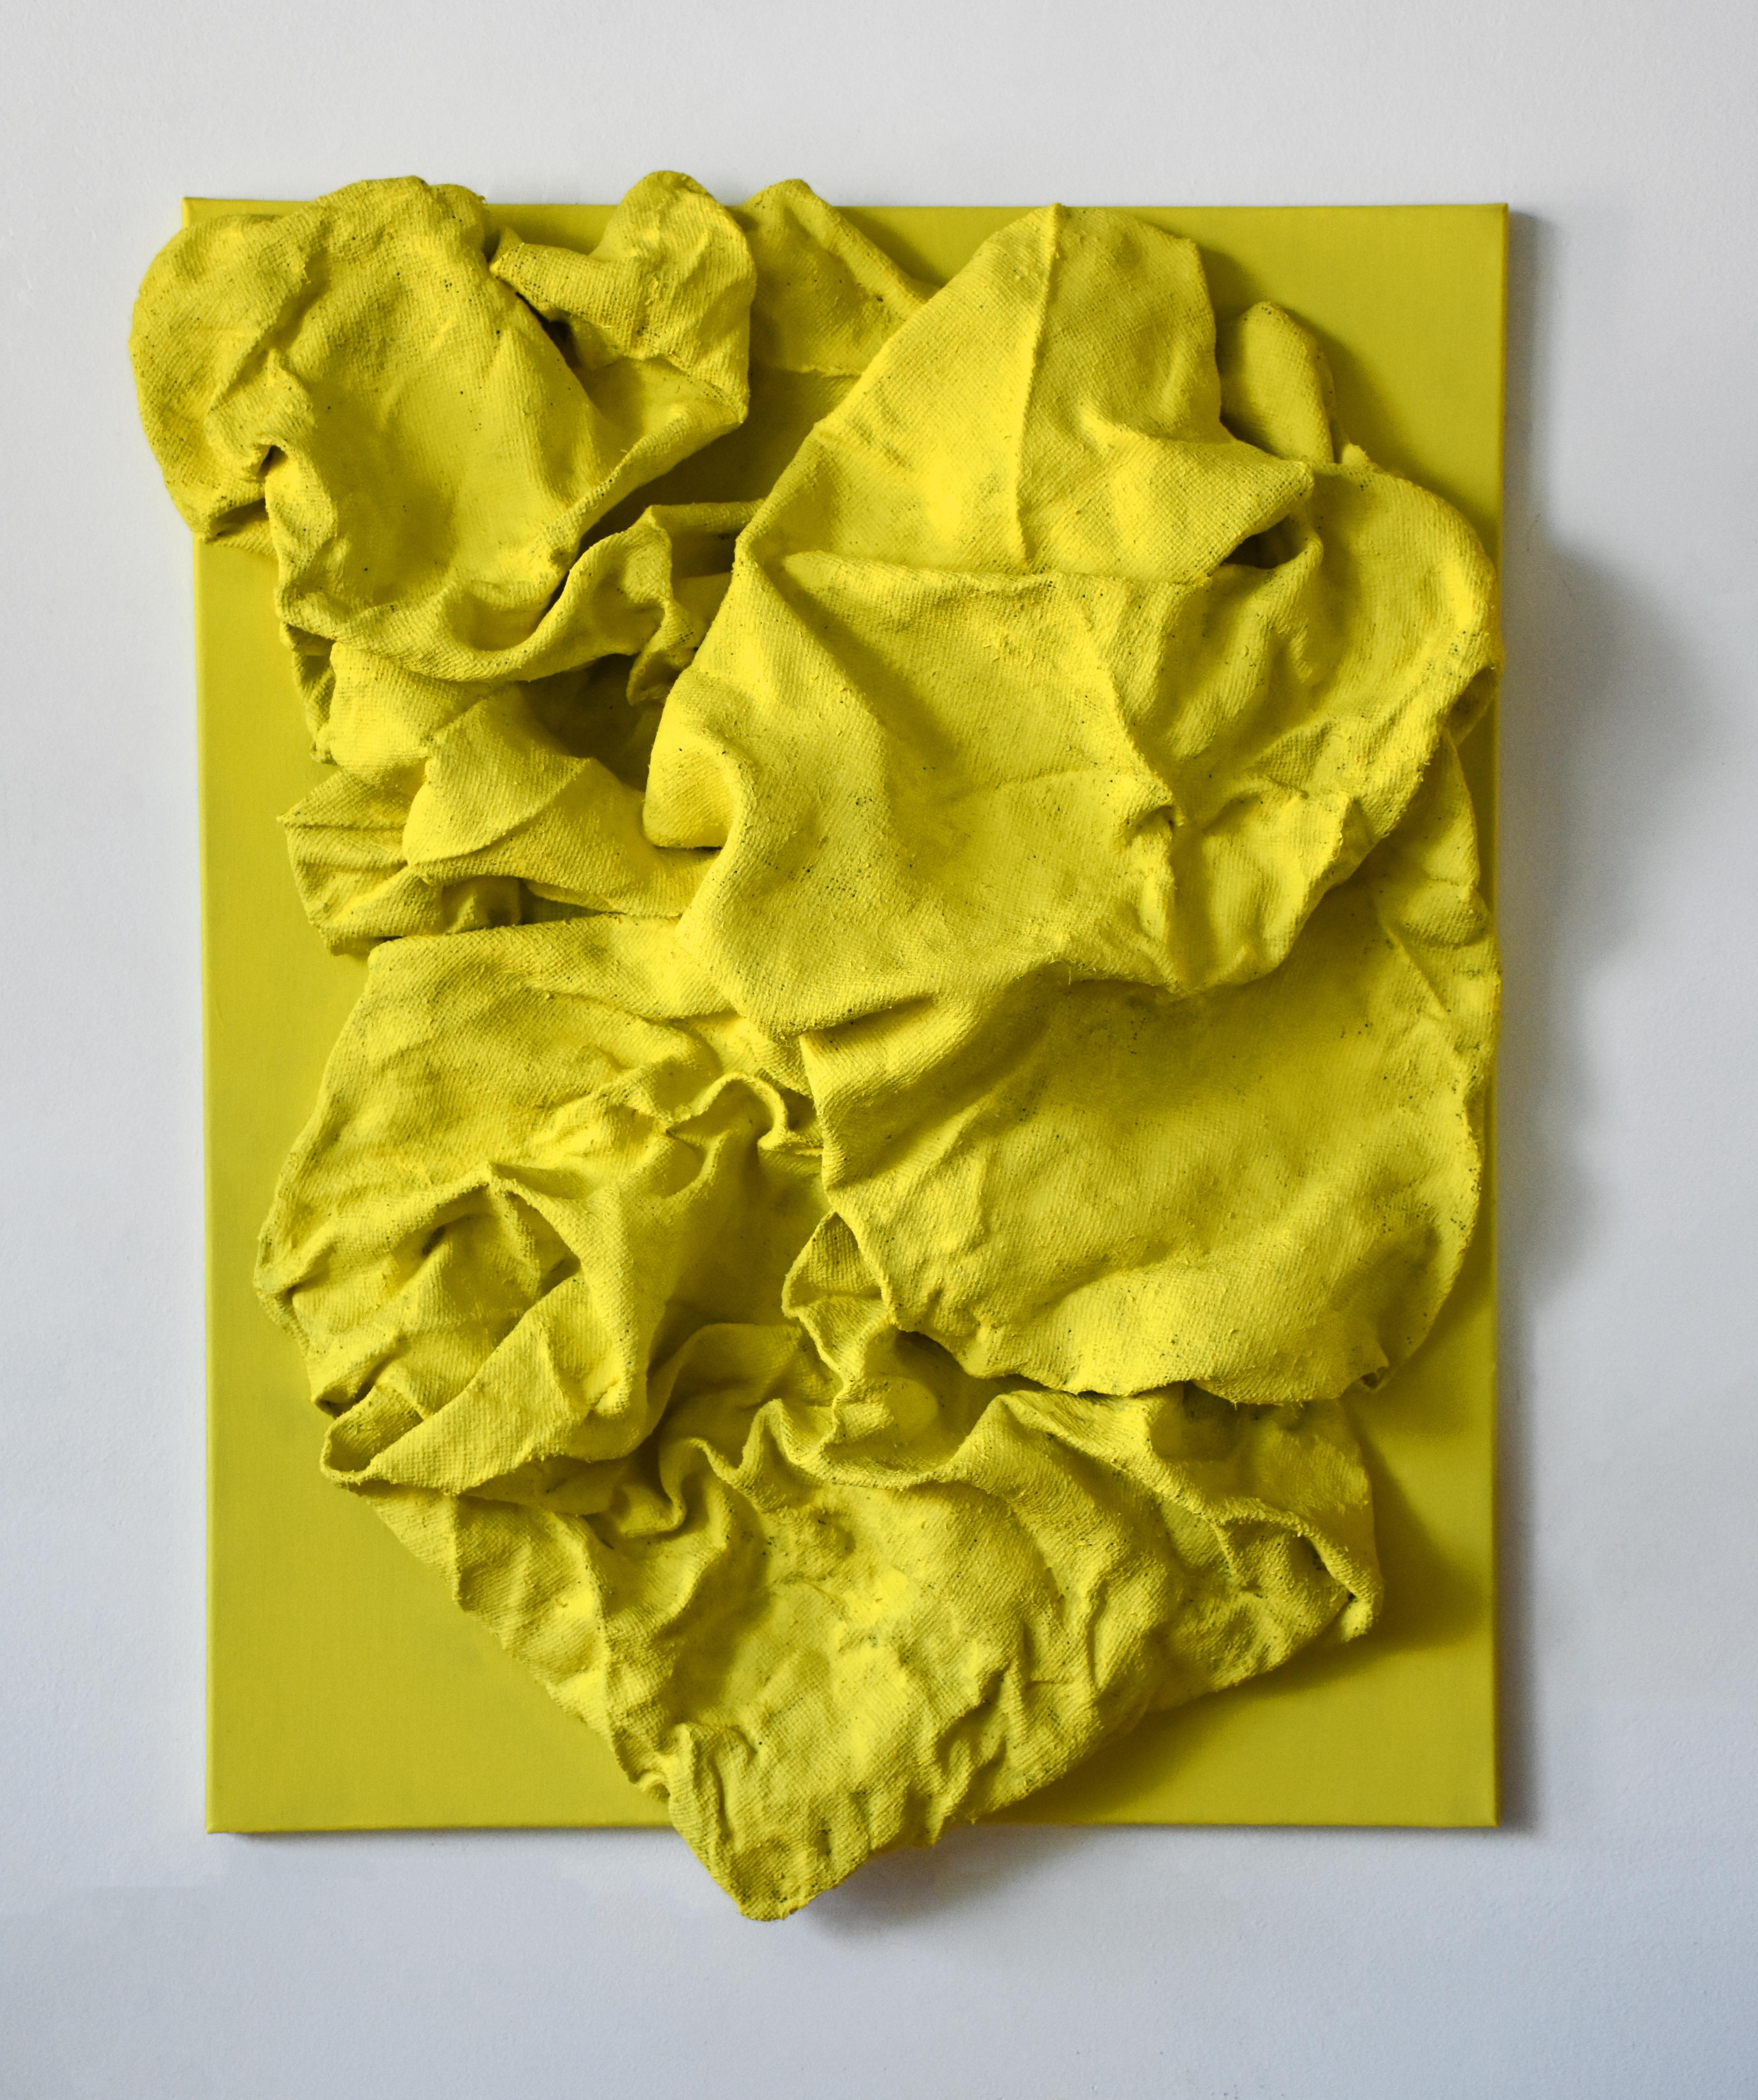 Chloe Hedden Abstract Sculpture - Lemon Yellow Folds (wall sculpture, hard fabric, textile sculpture, wall mount)